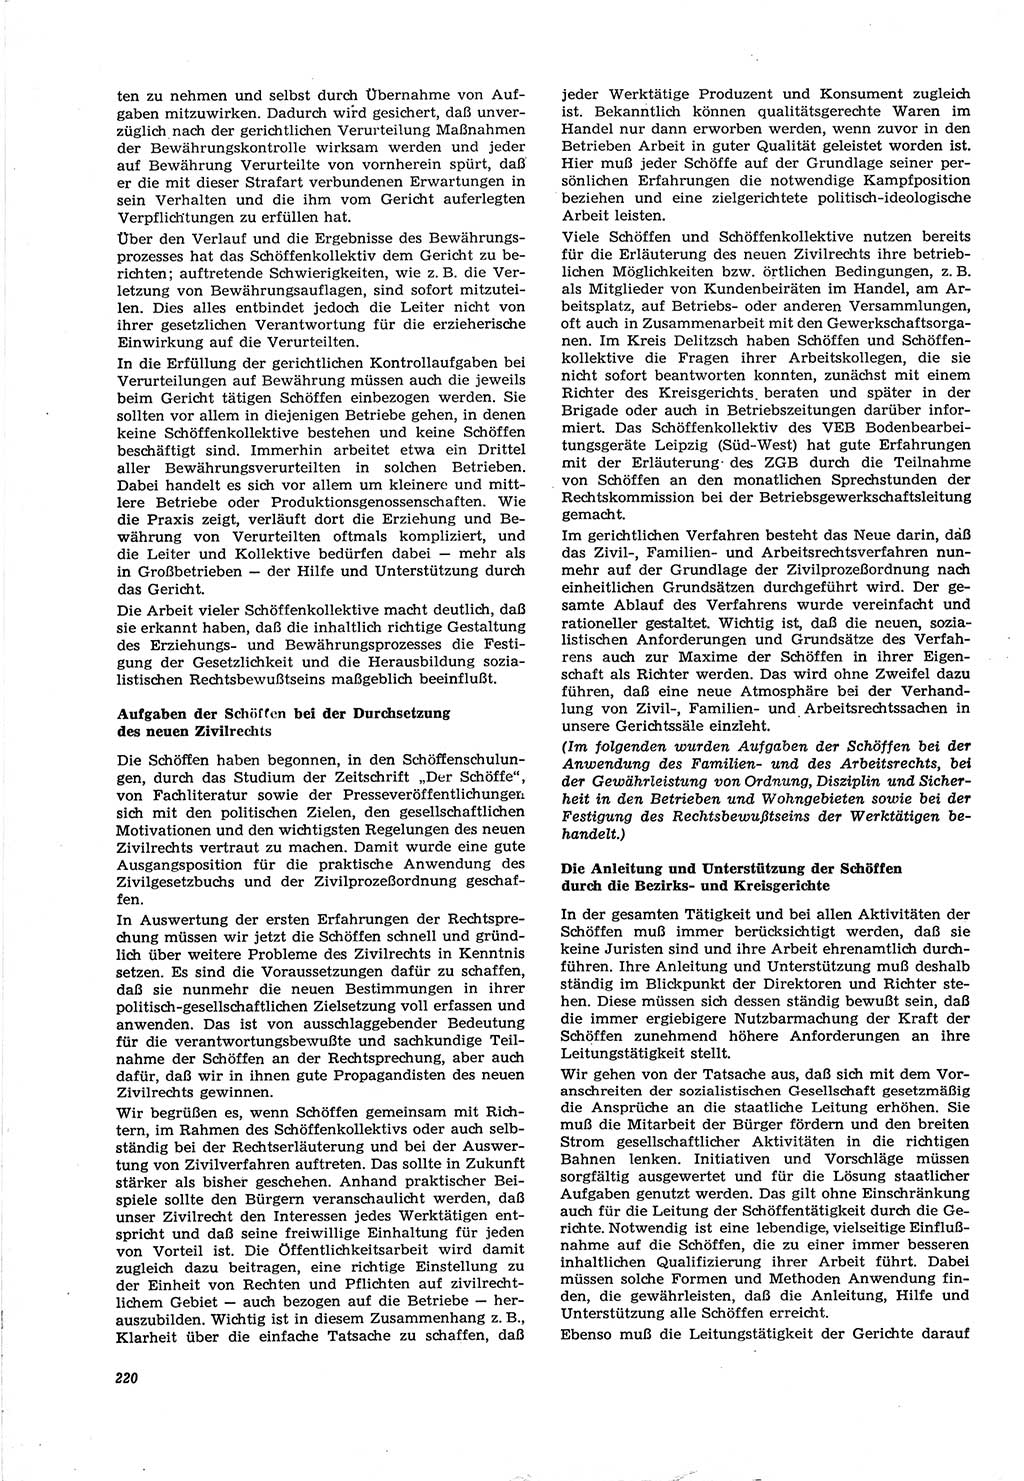 Neue Justiz (NJ), Zeitschrift für Recht und Rechtswissenschaft [Deutsche Demokratische Republik (DDR)], 30. Jahrgang 1976, Seite 220 (NJ DDR 1976, S. 220)